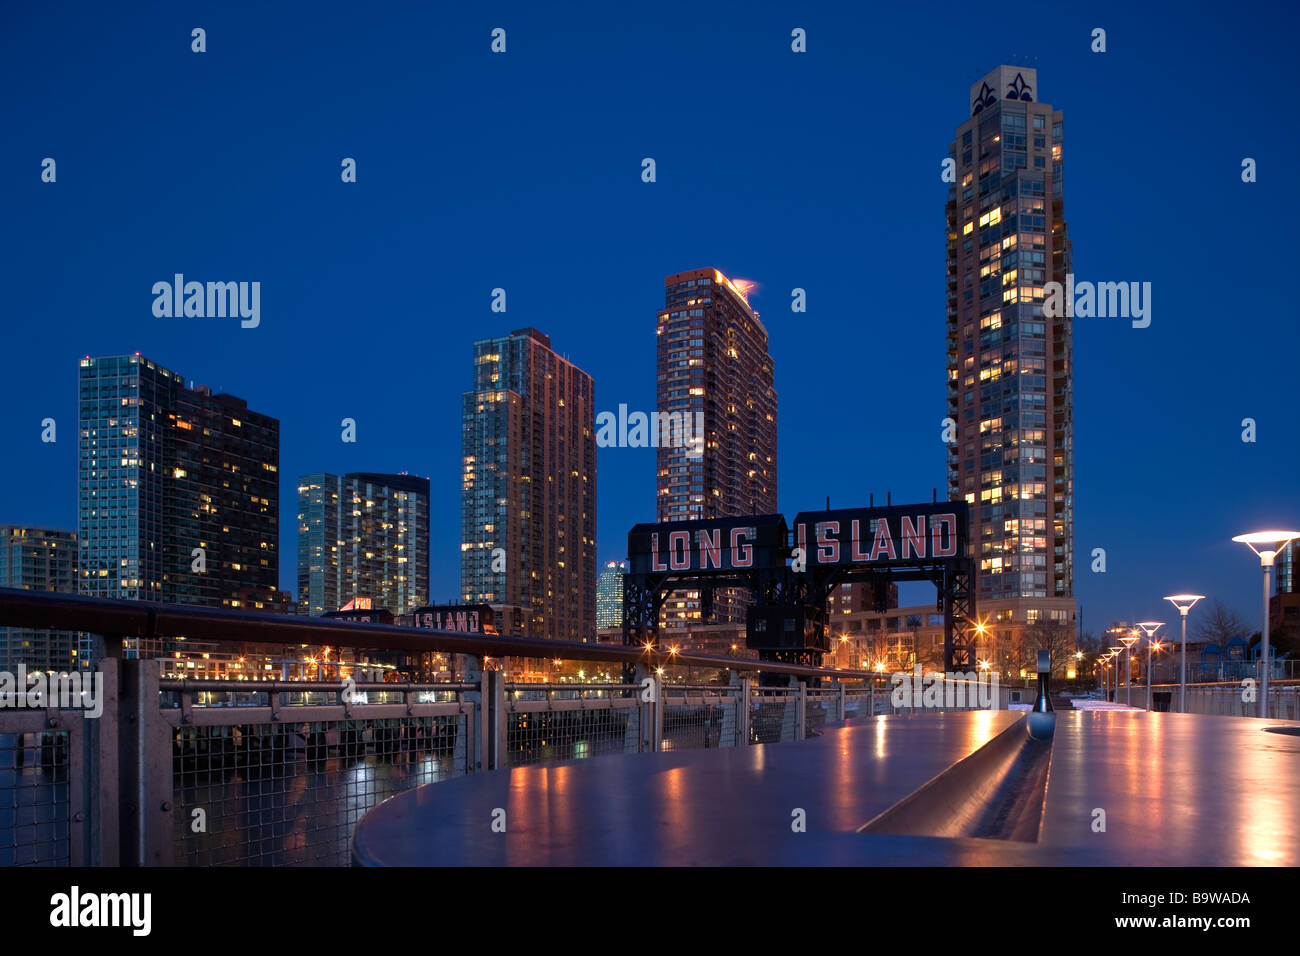 Les immeubles de hauteur bras STATE PARK PLAZA LONG ISLAND CITY WATERFRONT QUEENS NEW YORK CITY USA Banque D'Images